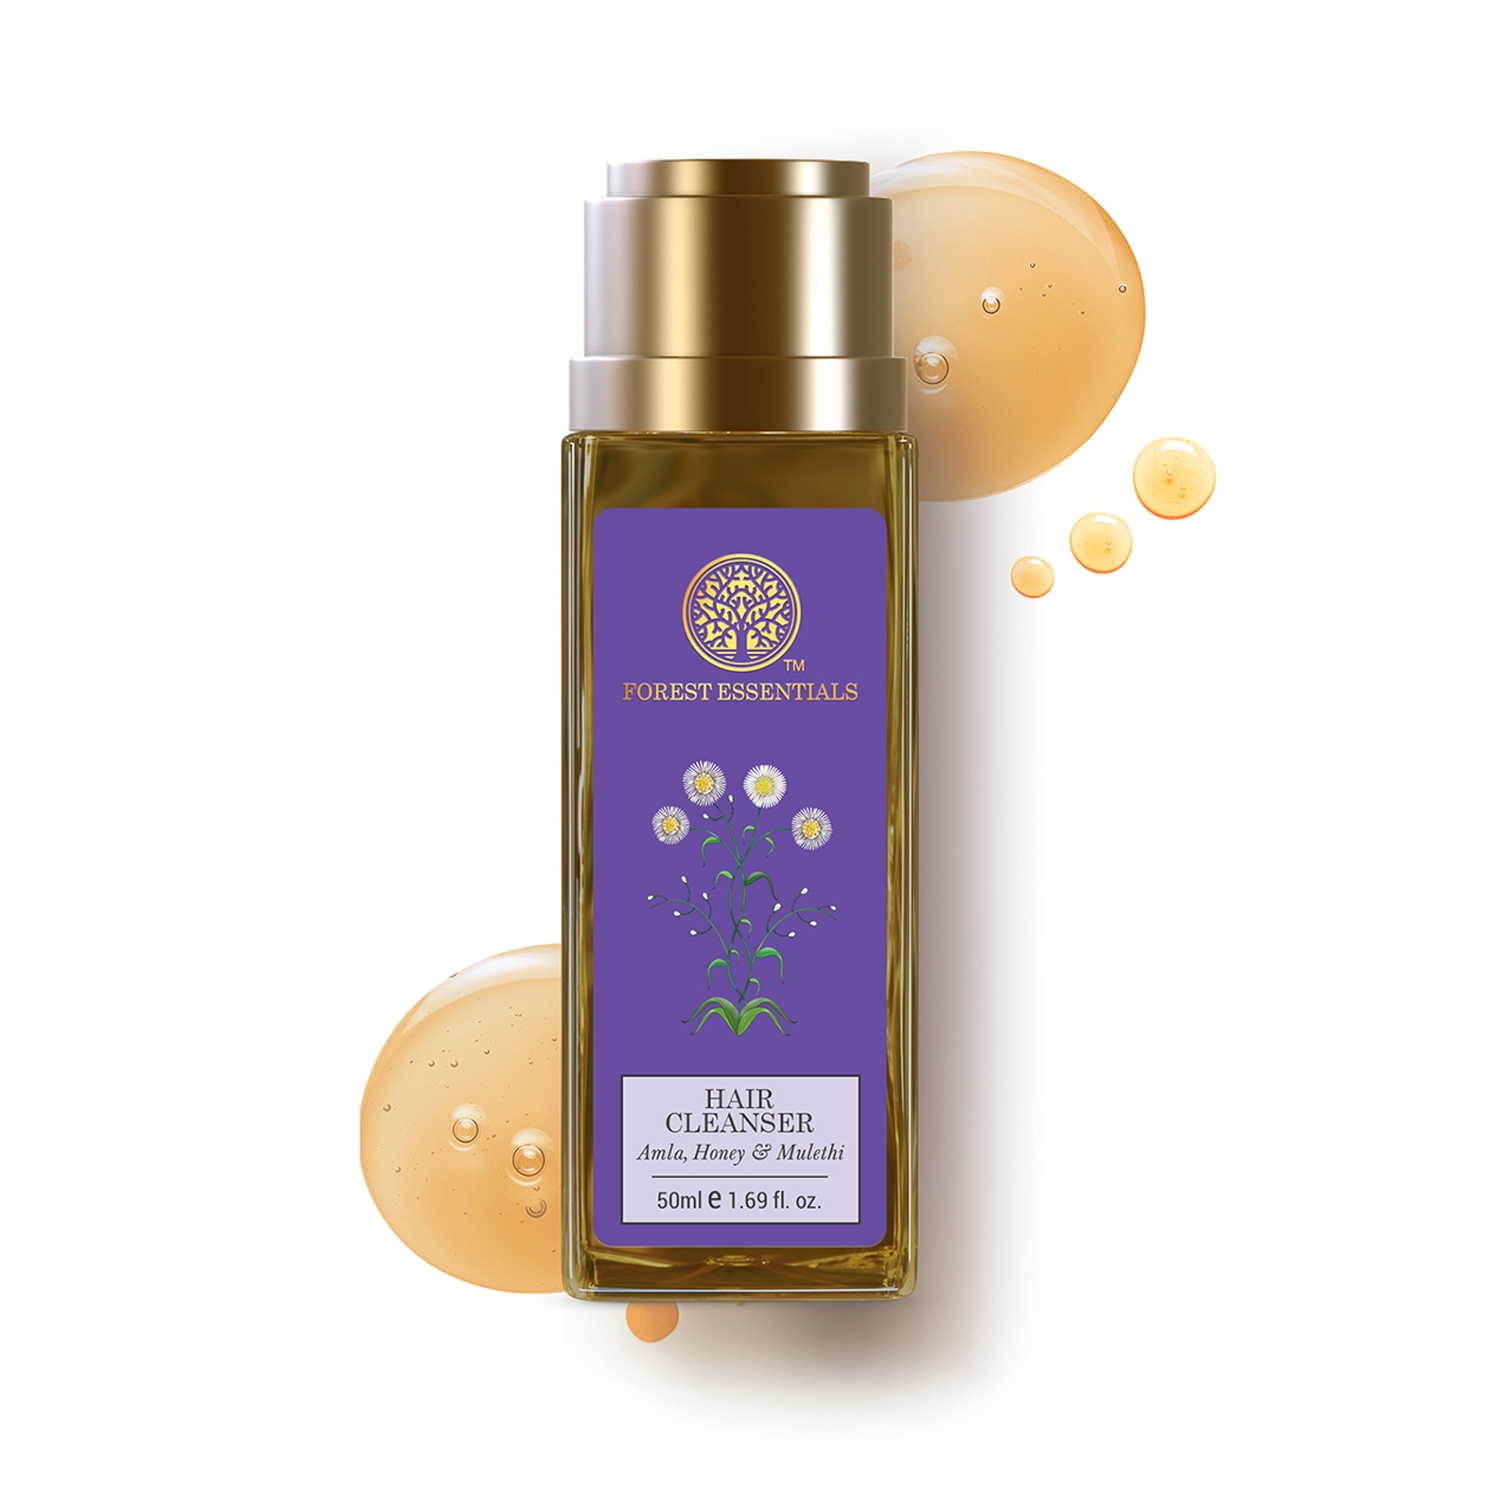 Forest Essentials | Forest Essentials Amla Honey & Mulethi Hair Cleanser Shampoo (5ml)